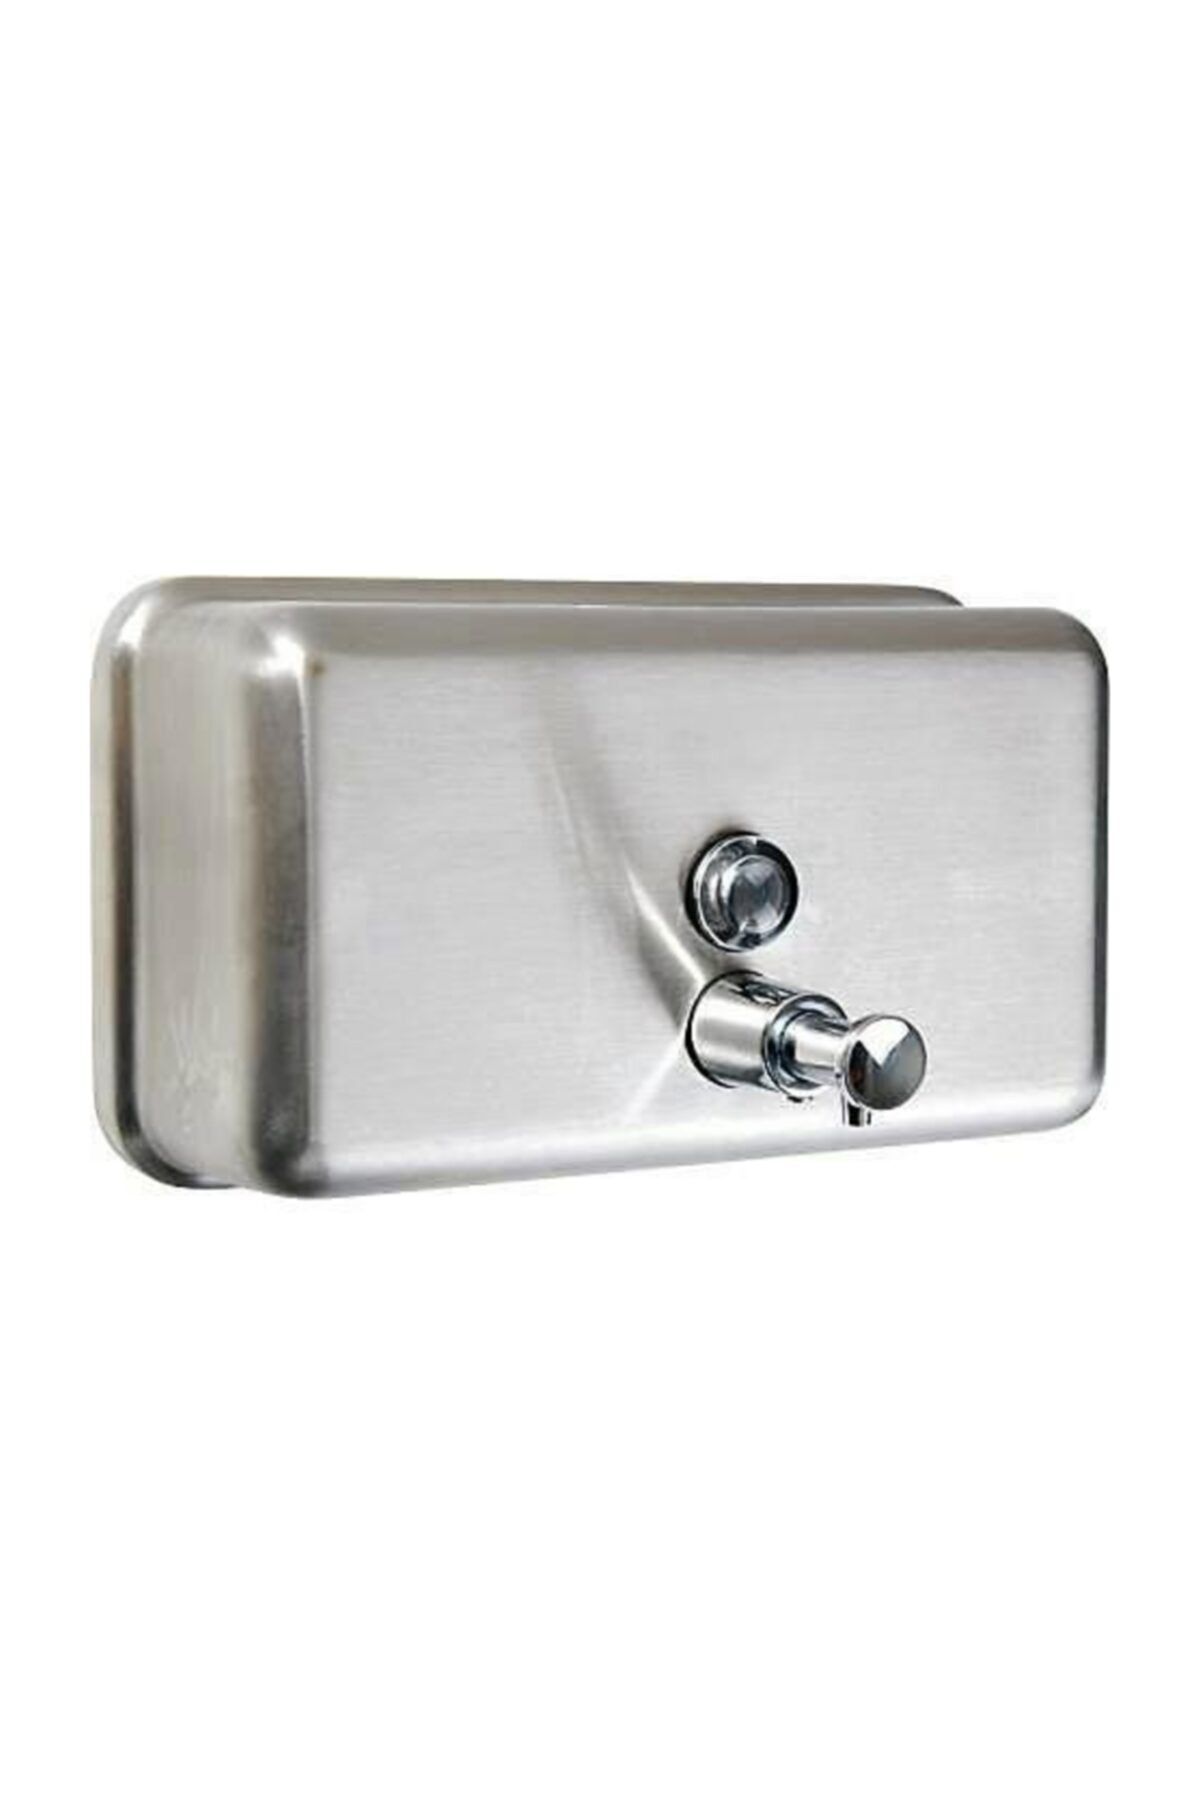 Arı Metal 7297 Mat Sıvı Sabun Dispenseri Yatay Paslanmaz Çelik